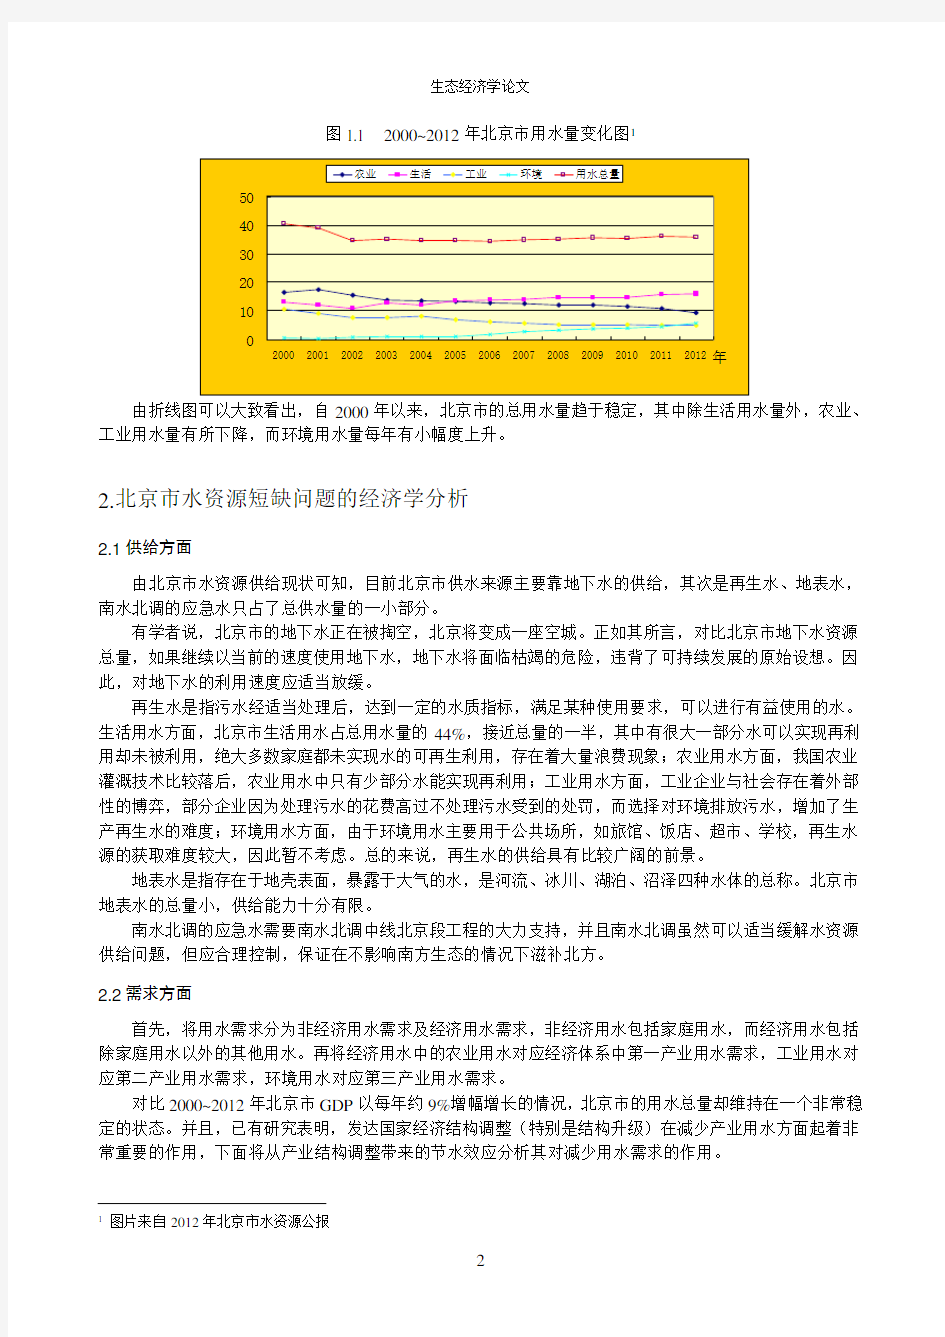 关于北京市水资源短缺问题的经济学分析和对策